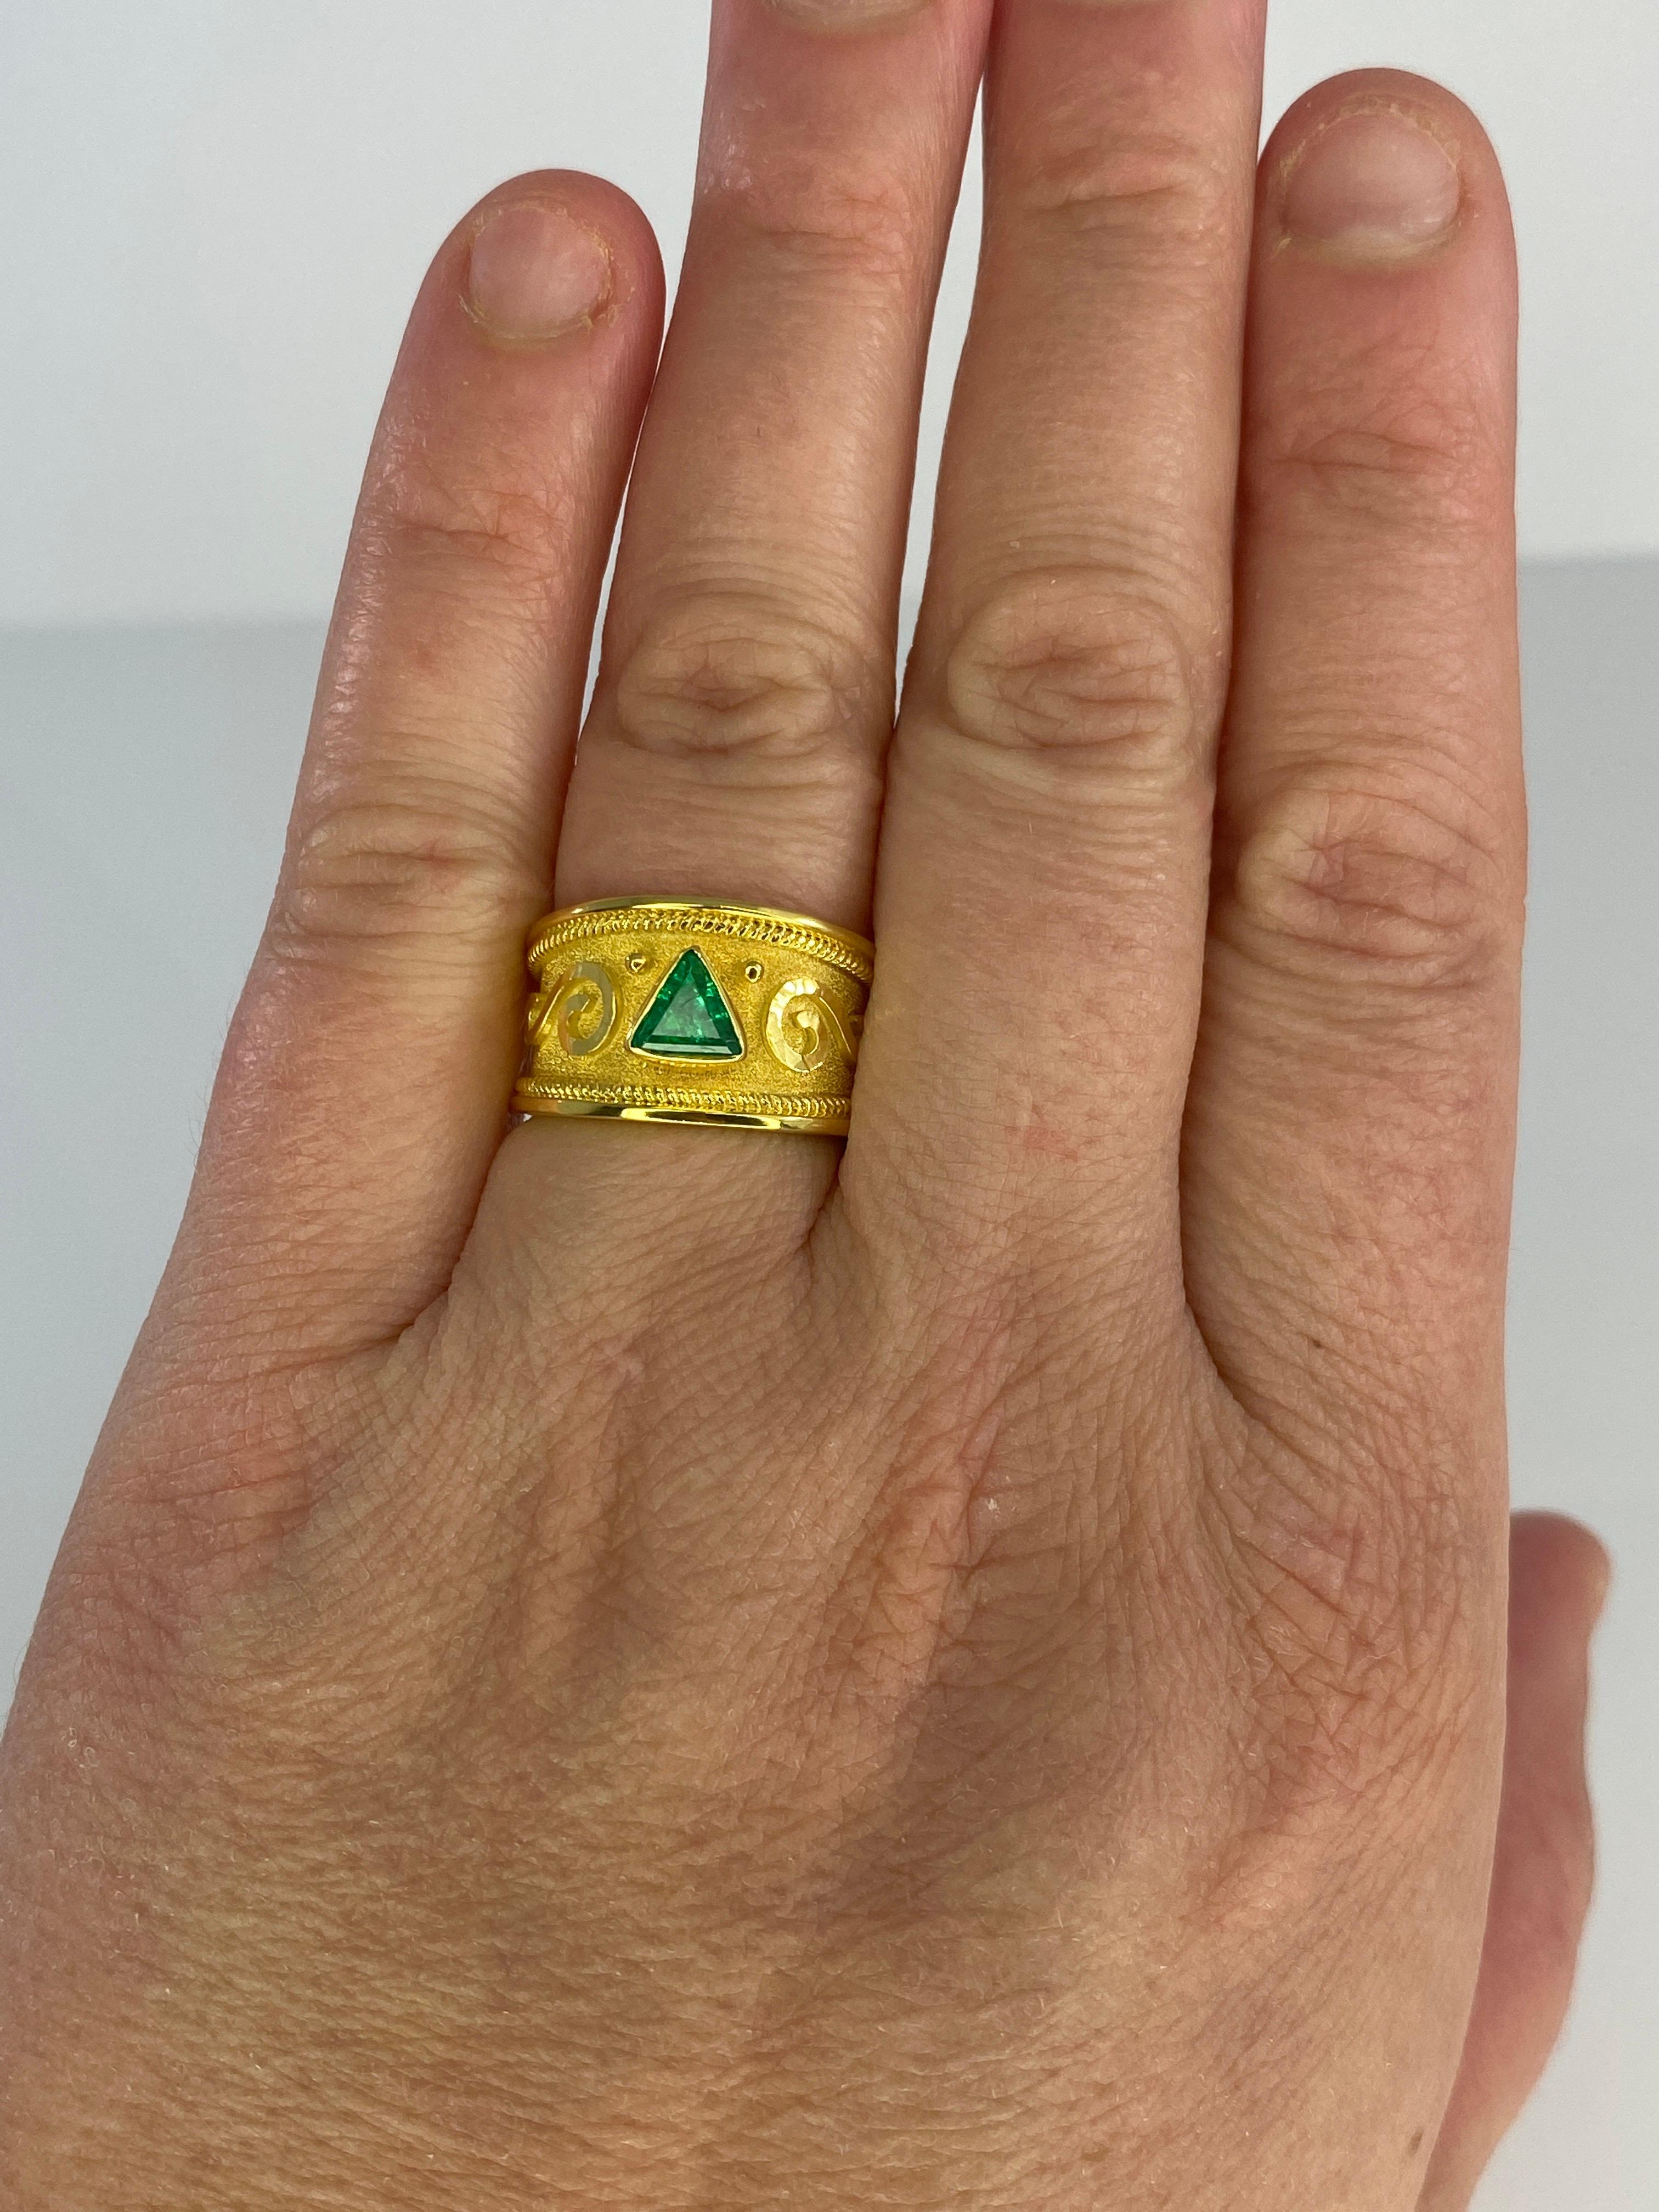 S.Georgios Designerring aus Gelbgold 18 Karat, verziert mit einem byzantinischen Samthintergrund und Granulationsdetails - gedrehte Drähte und Perlen, alle von Hand verziert. In der Mitte dieses wunderschönen Rings befindet sich ein wunderschöner